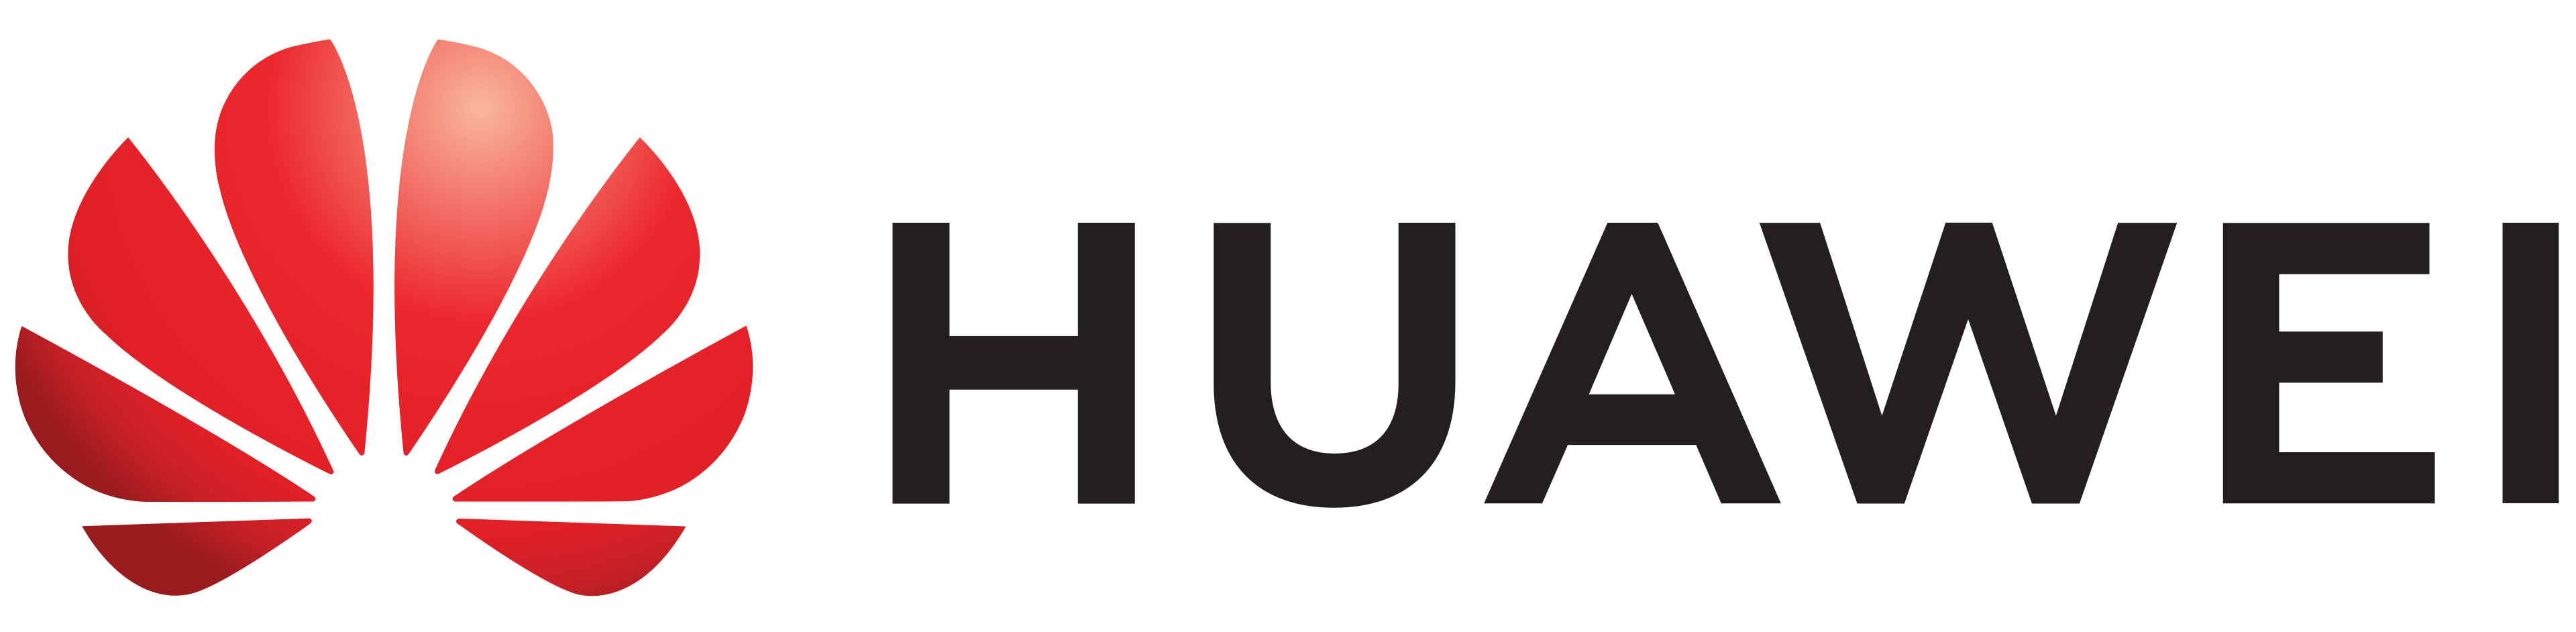 Huawei Emblem 2 Pametni satovi nam pomažu da vodimo računa o svom zdravlju, a evo i kako